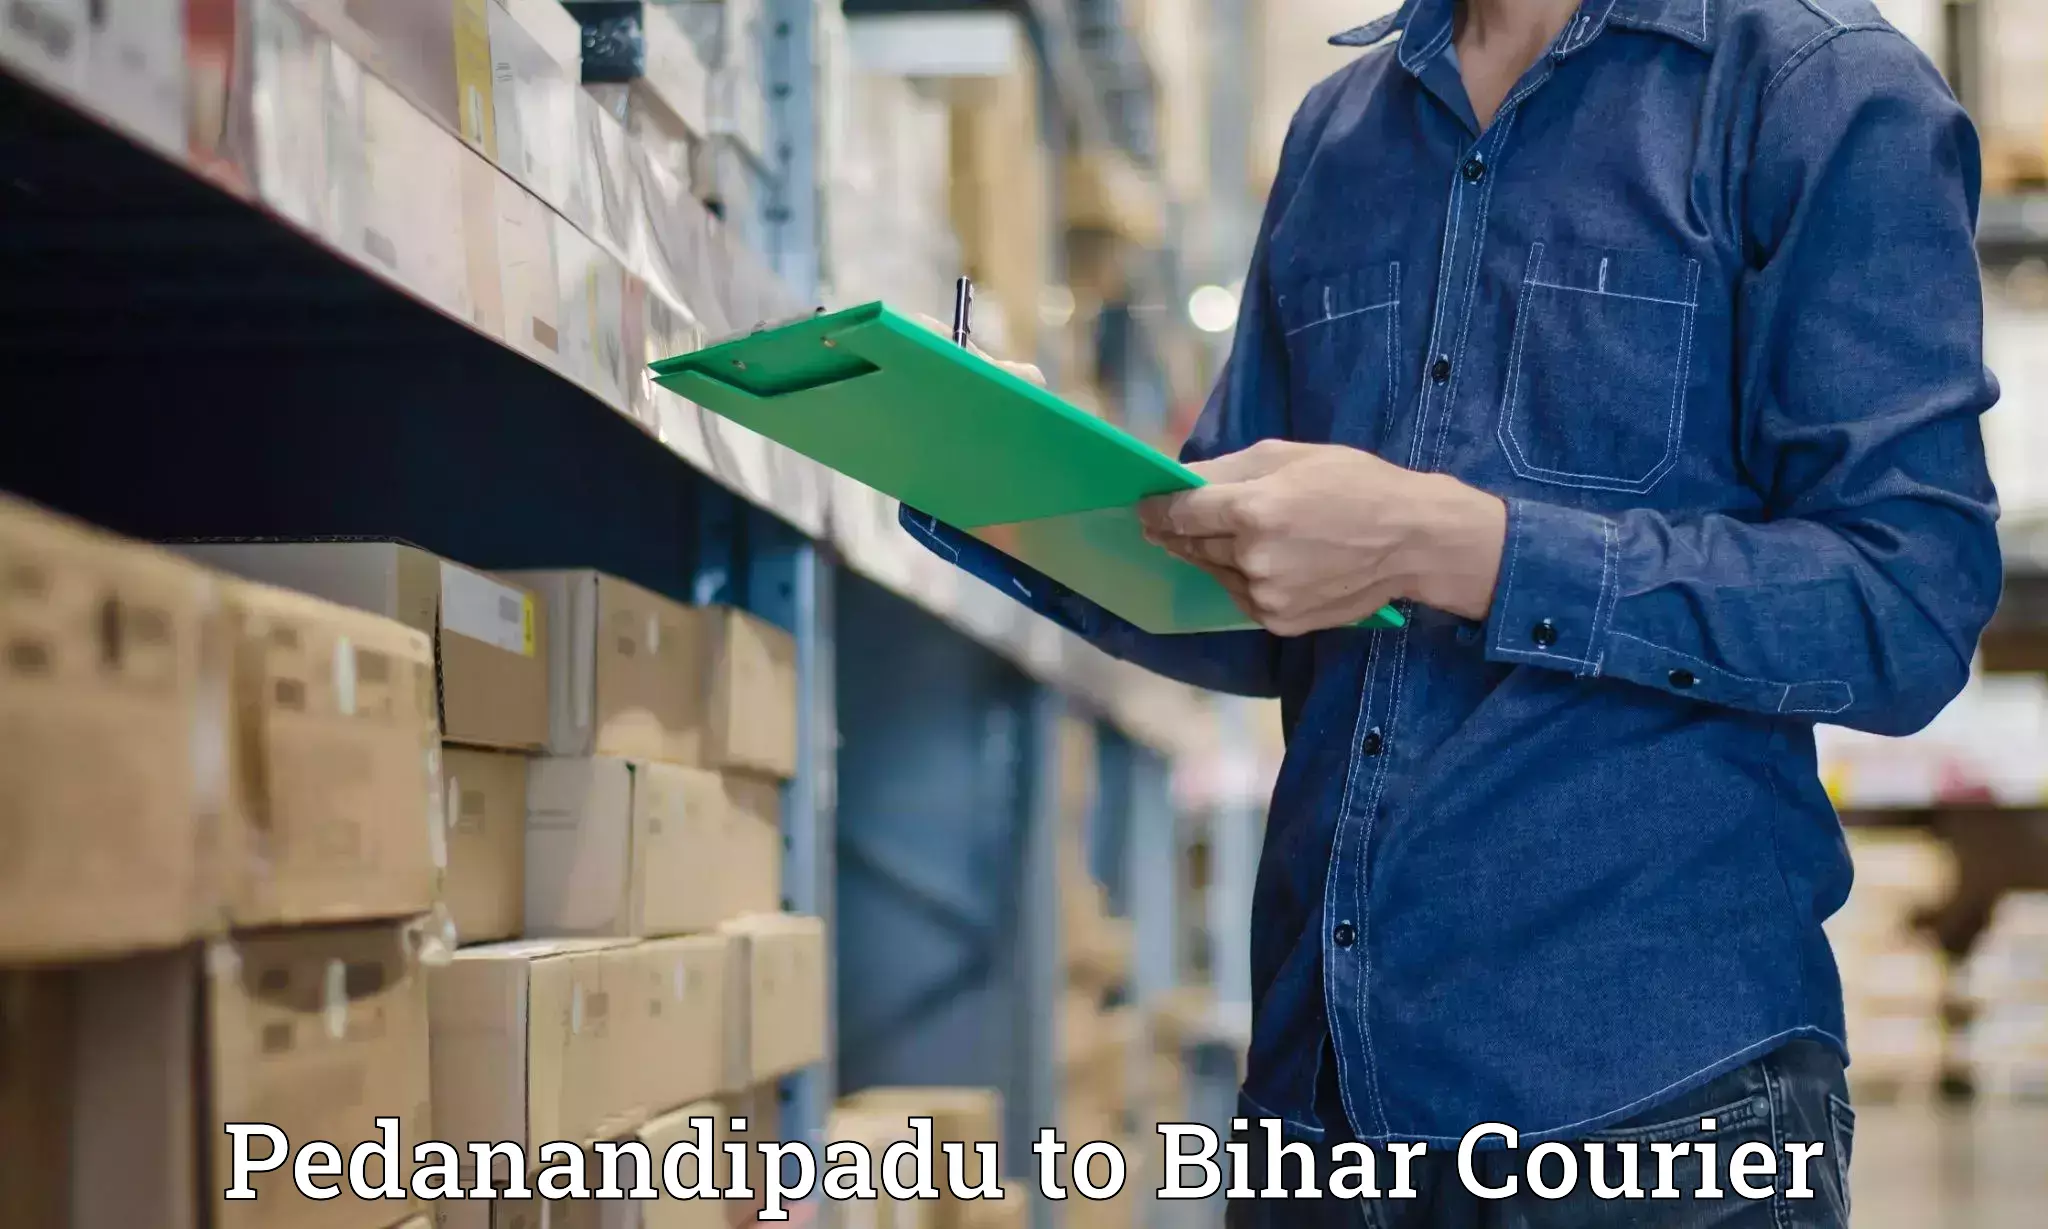 Large-scale shipping solutions Pedanandipadu to Goh Aurangabad